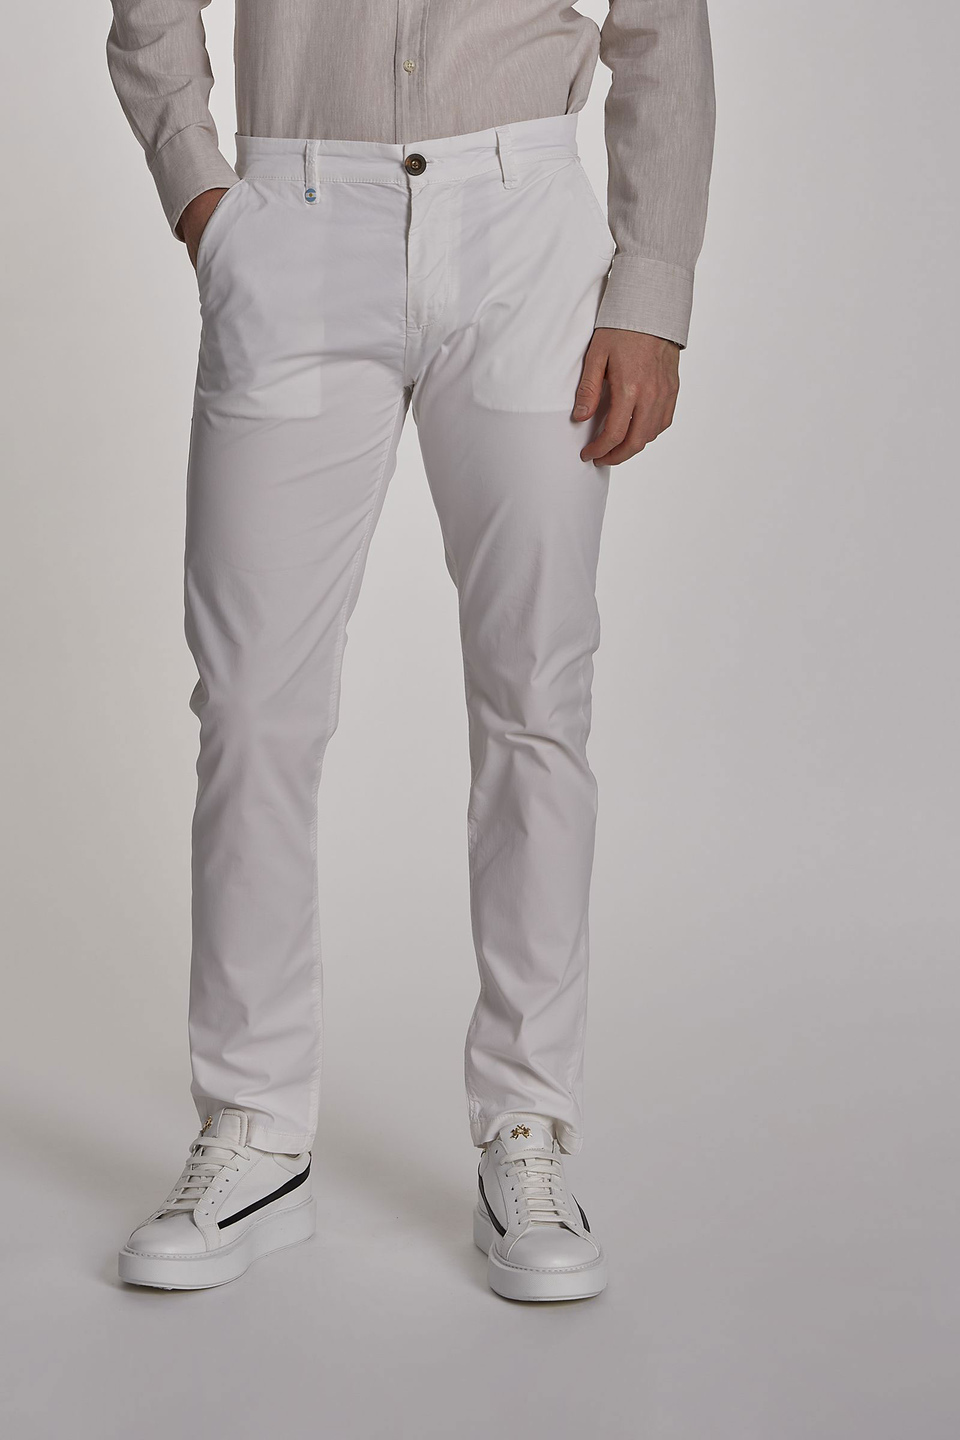 Pantalón de hombre modelo chino de algodón elástico, corte slim - La Martina - Official Online Shop